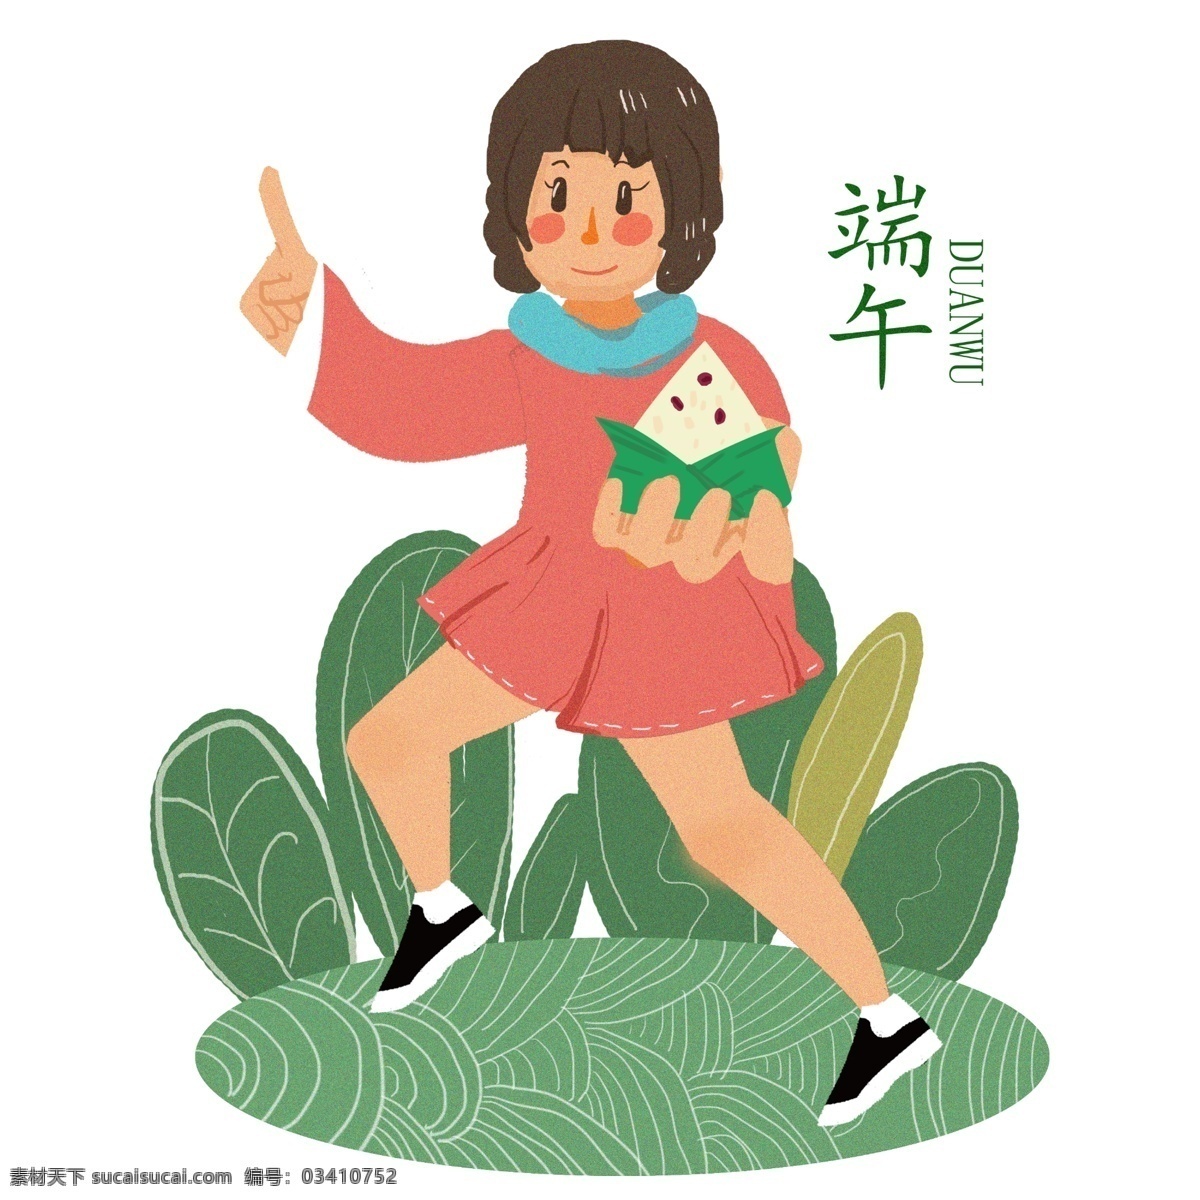 端午节 吃 粽子 习俗 手绘 插画 传统习俗 女孩 开心 夏天 清凉 包粽子 吃粽子 传统 卷发